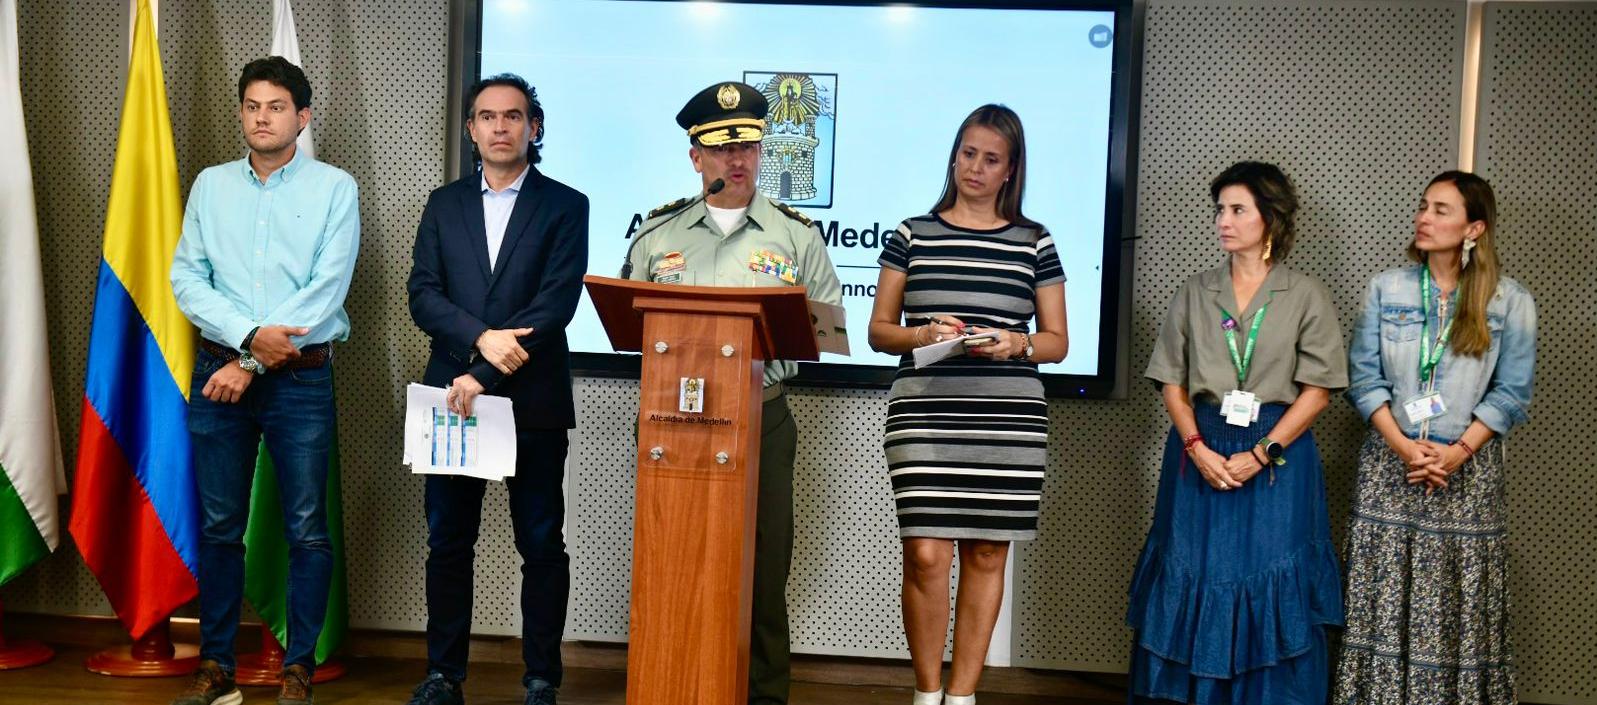 Federico Gutiérrez, Alcalde de Medellín y demás autoridades en la rueda de prensa de este lunes